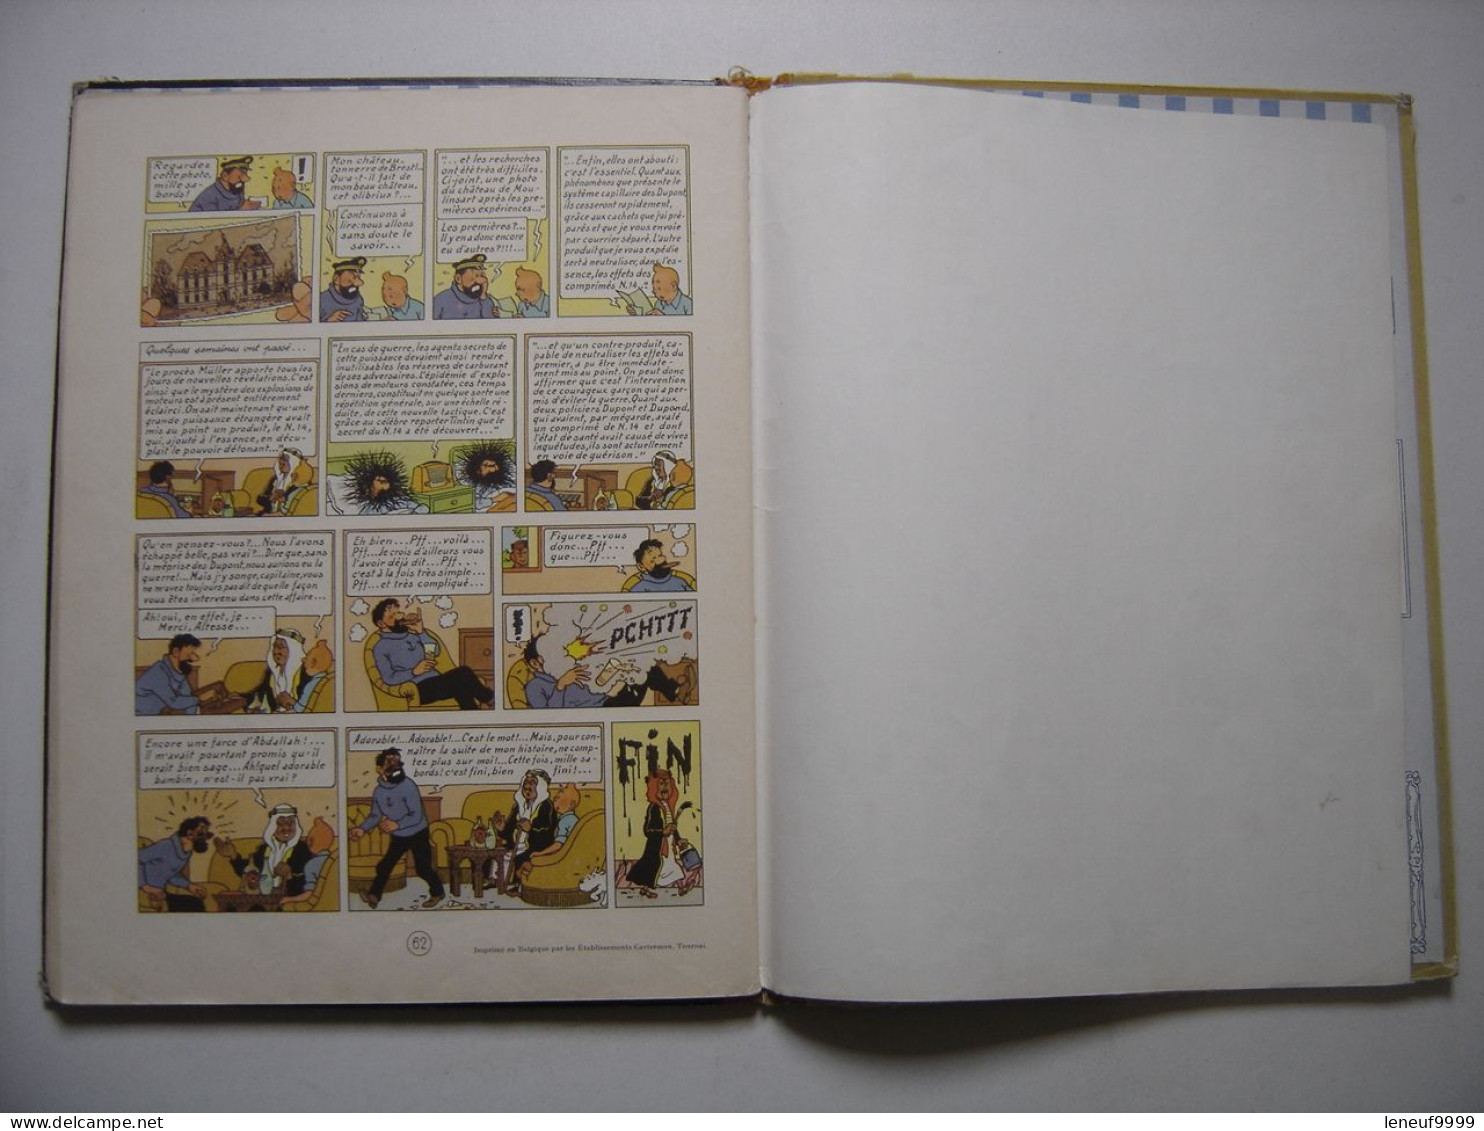 Tintin au Pays de l'or noir HERGE Les aventures de Tintin 1960 Casterman